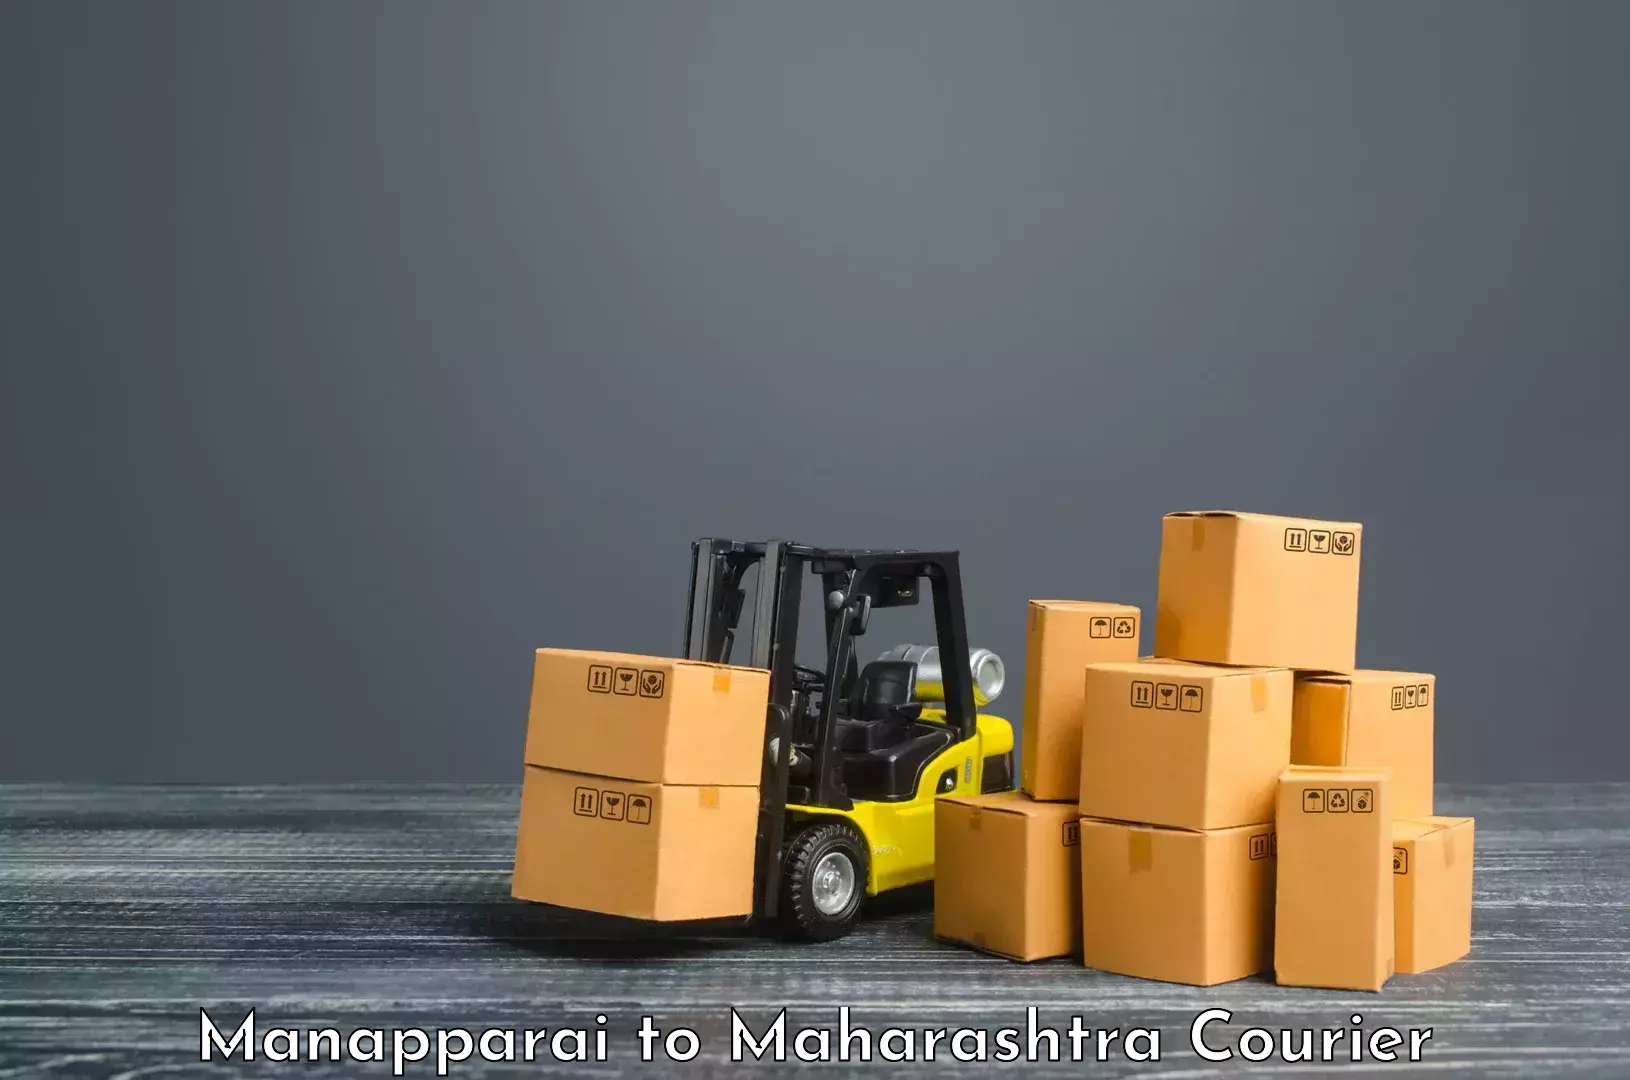 Global shipping networks Manapparai to Muktainagar